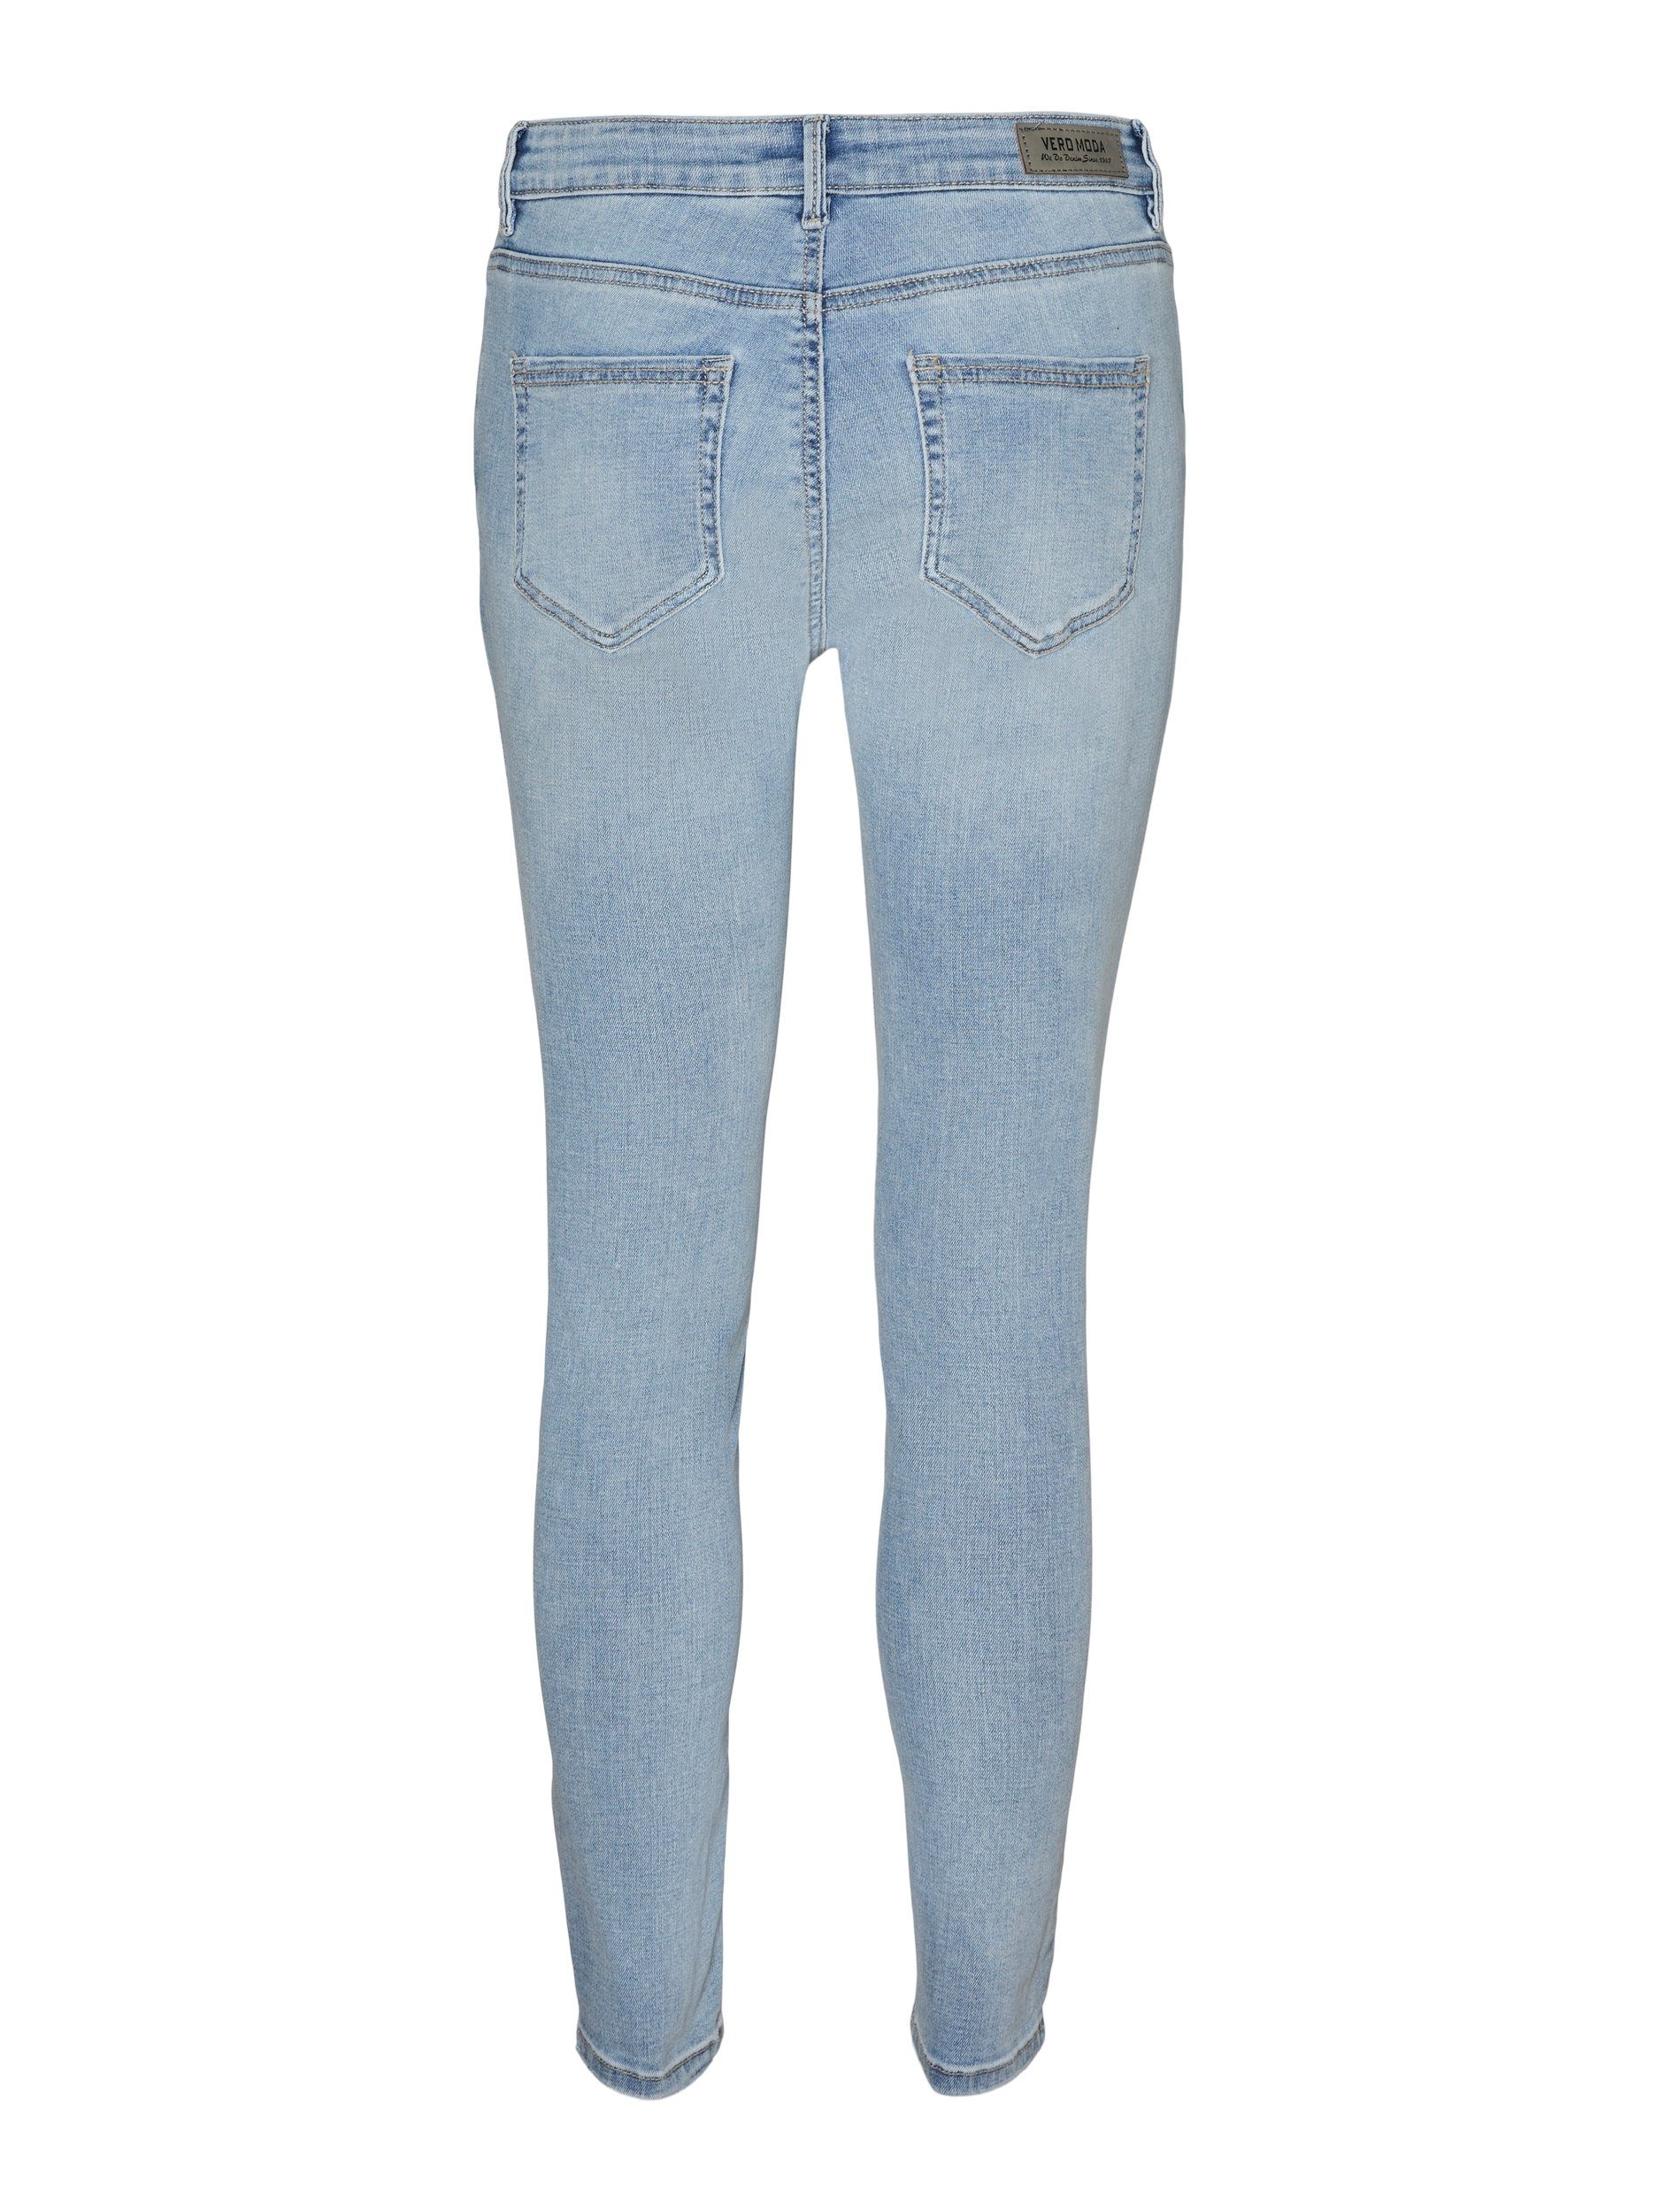 JEANS Skinny-fit-Jeans LI3102 Vero GA VMFLASH MR Moda SKINNY NOOS